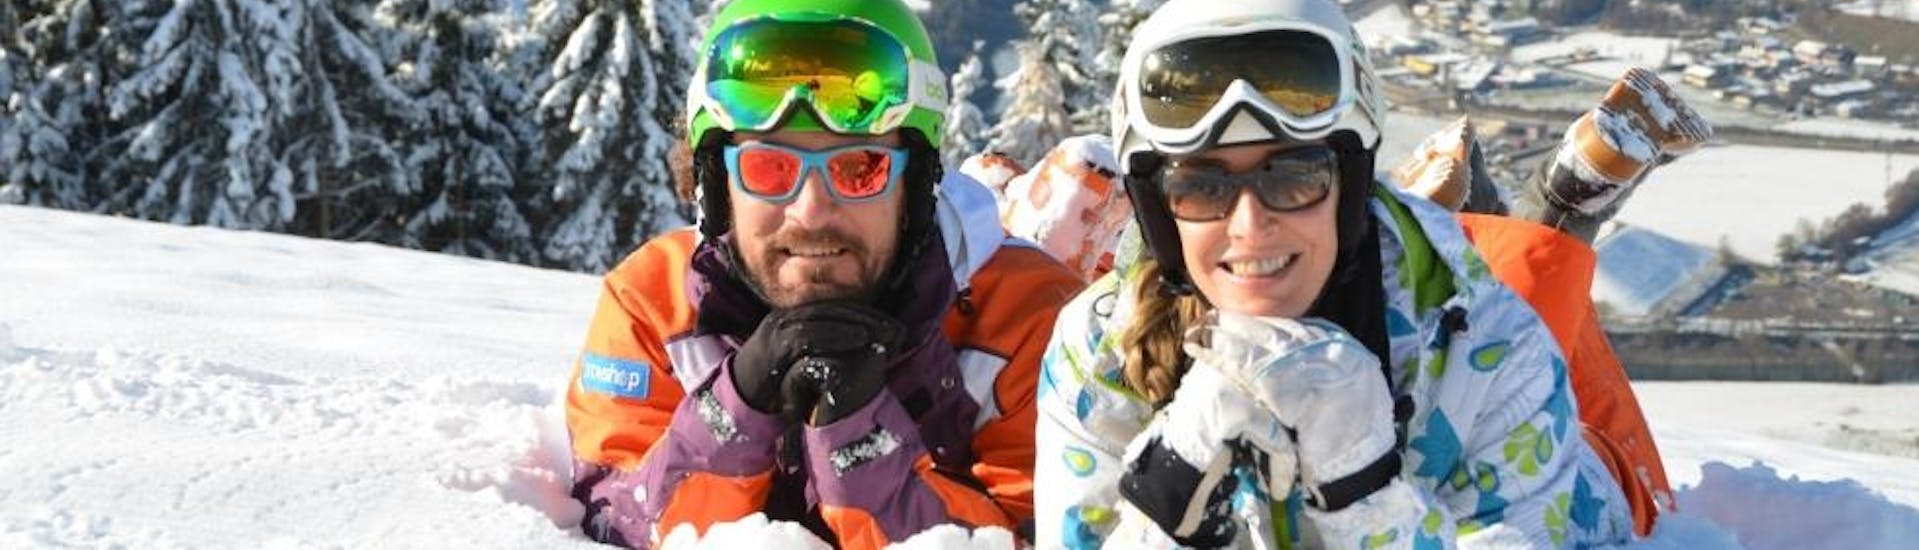 Cours de ski Adultes - Tous niveaux avec Ecole de ski Toni Gruber.